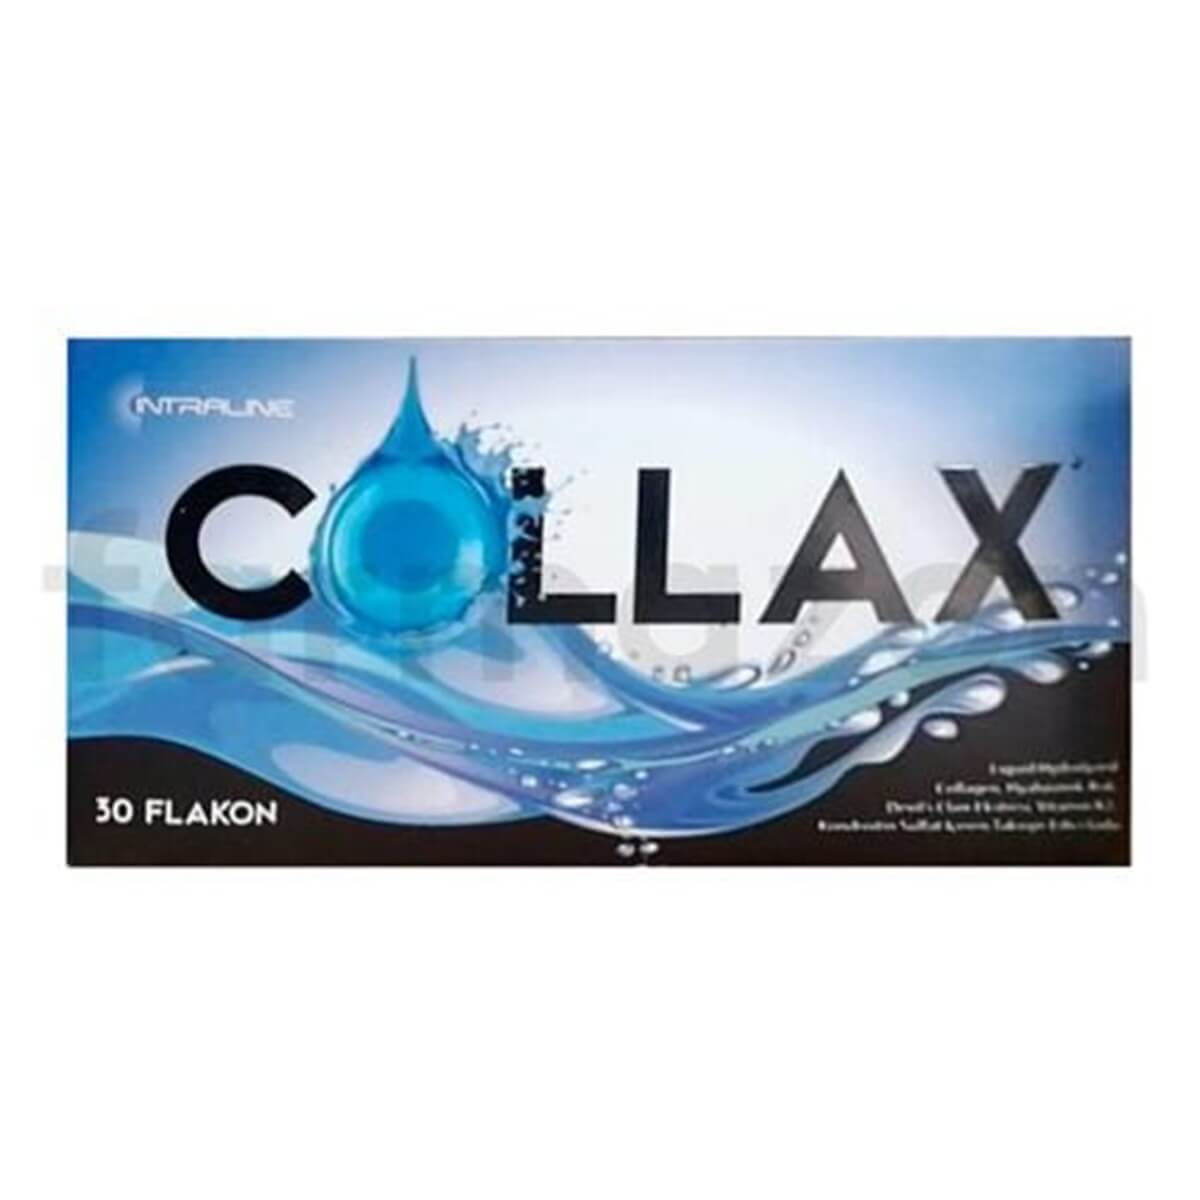 Collax Liquid Hydrolyzed Collagen 30 Flakon